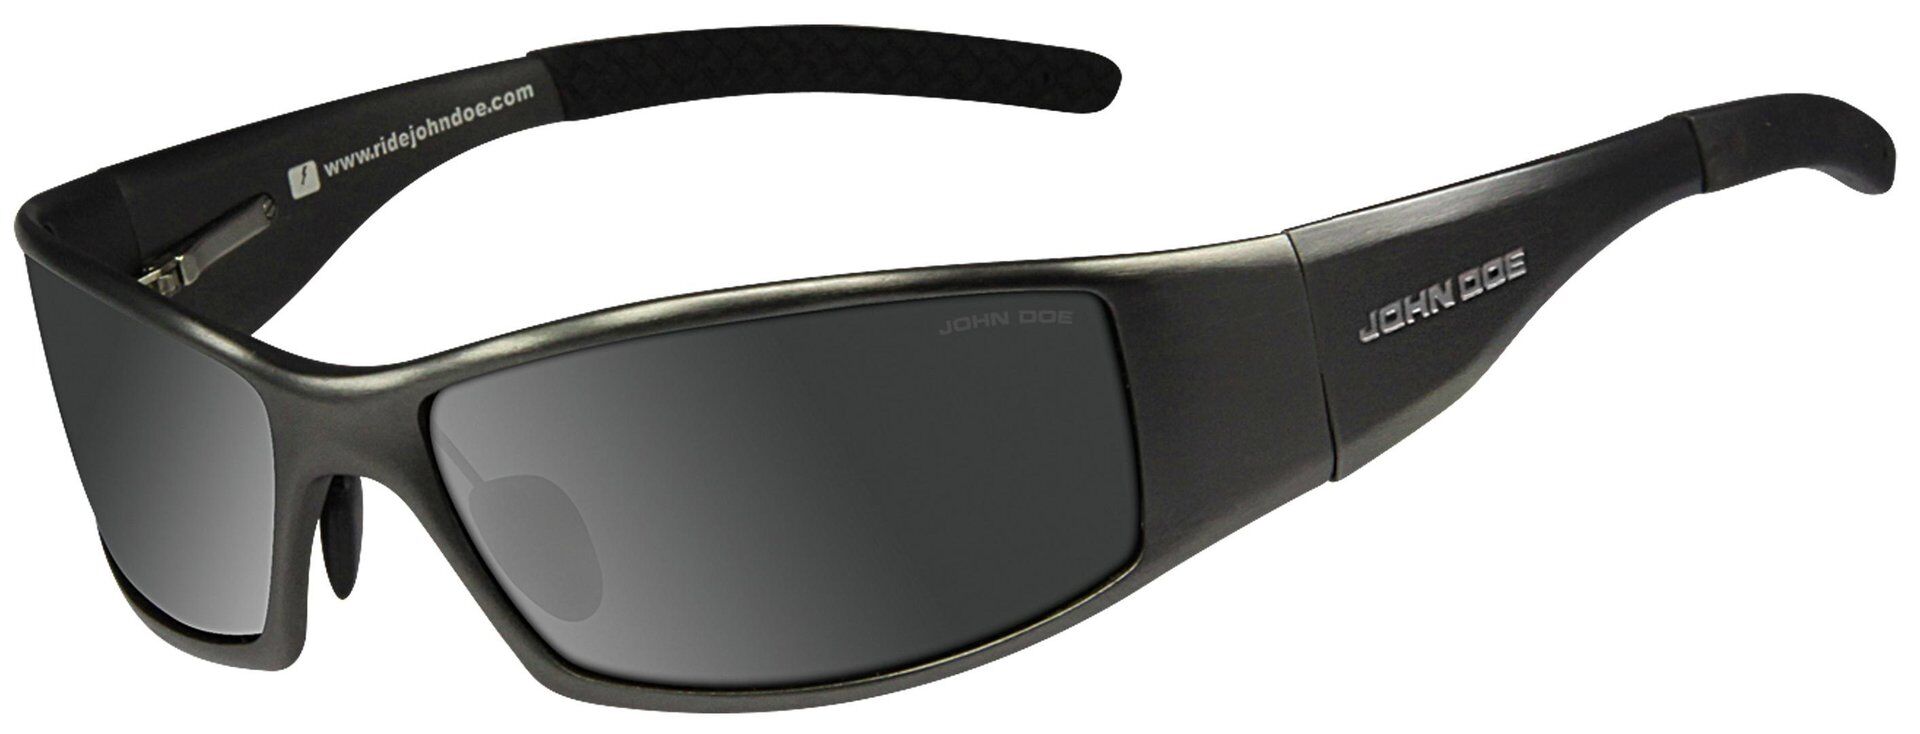 John Doe Titan Glider Sungglasses Noir taille : unique taille